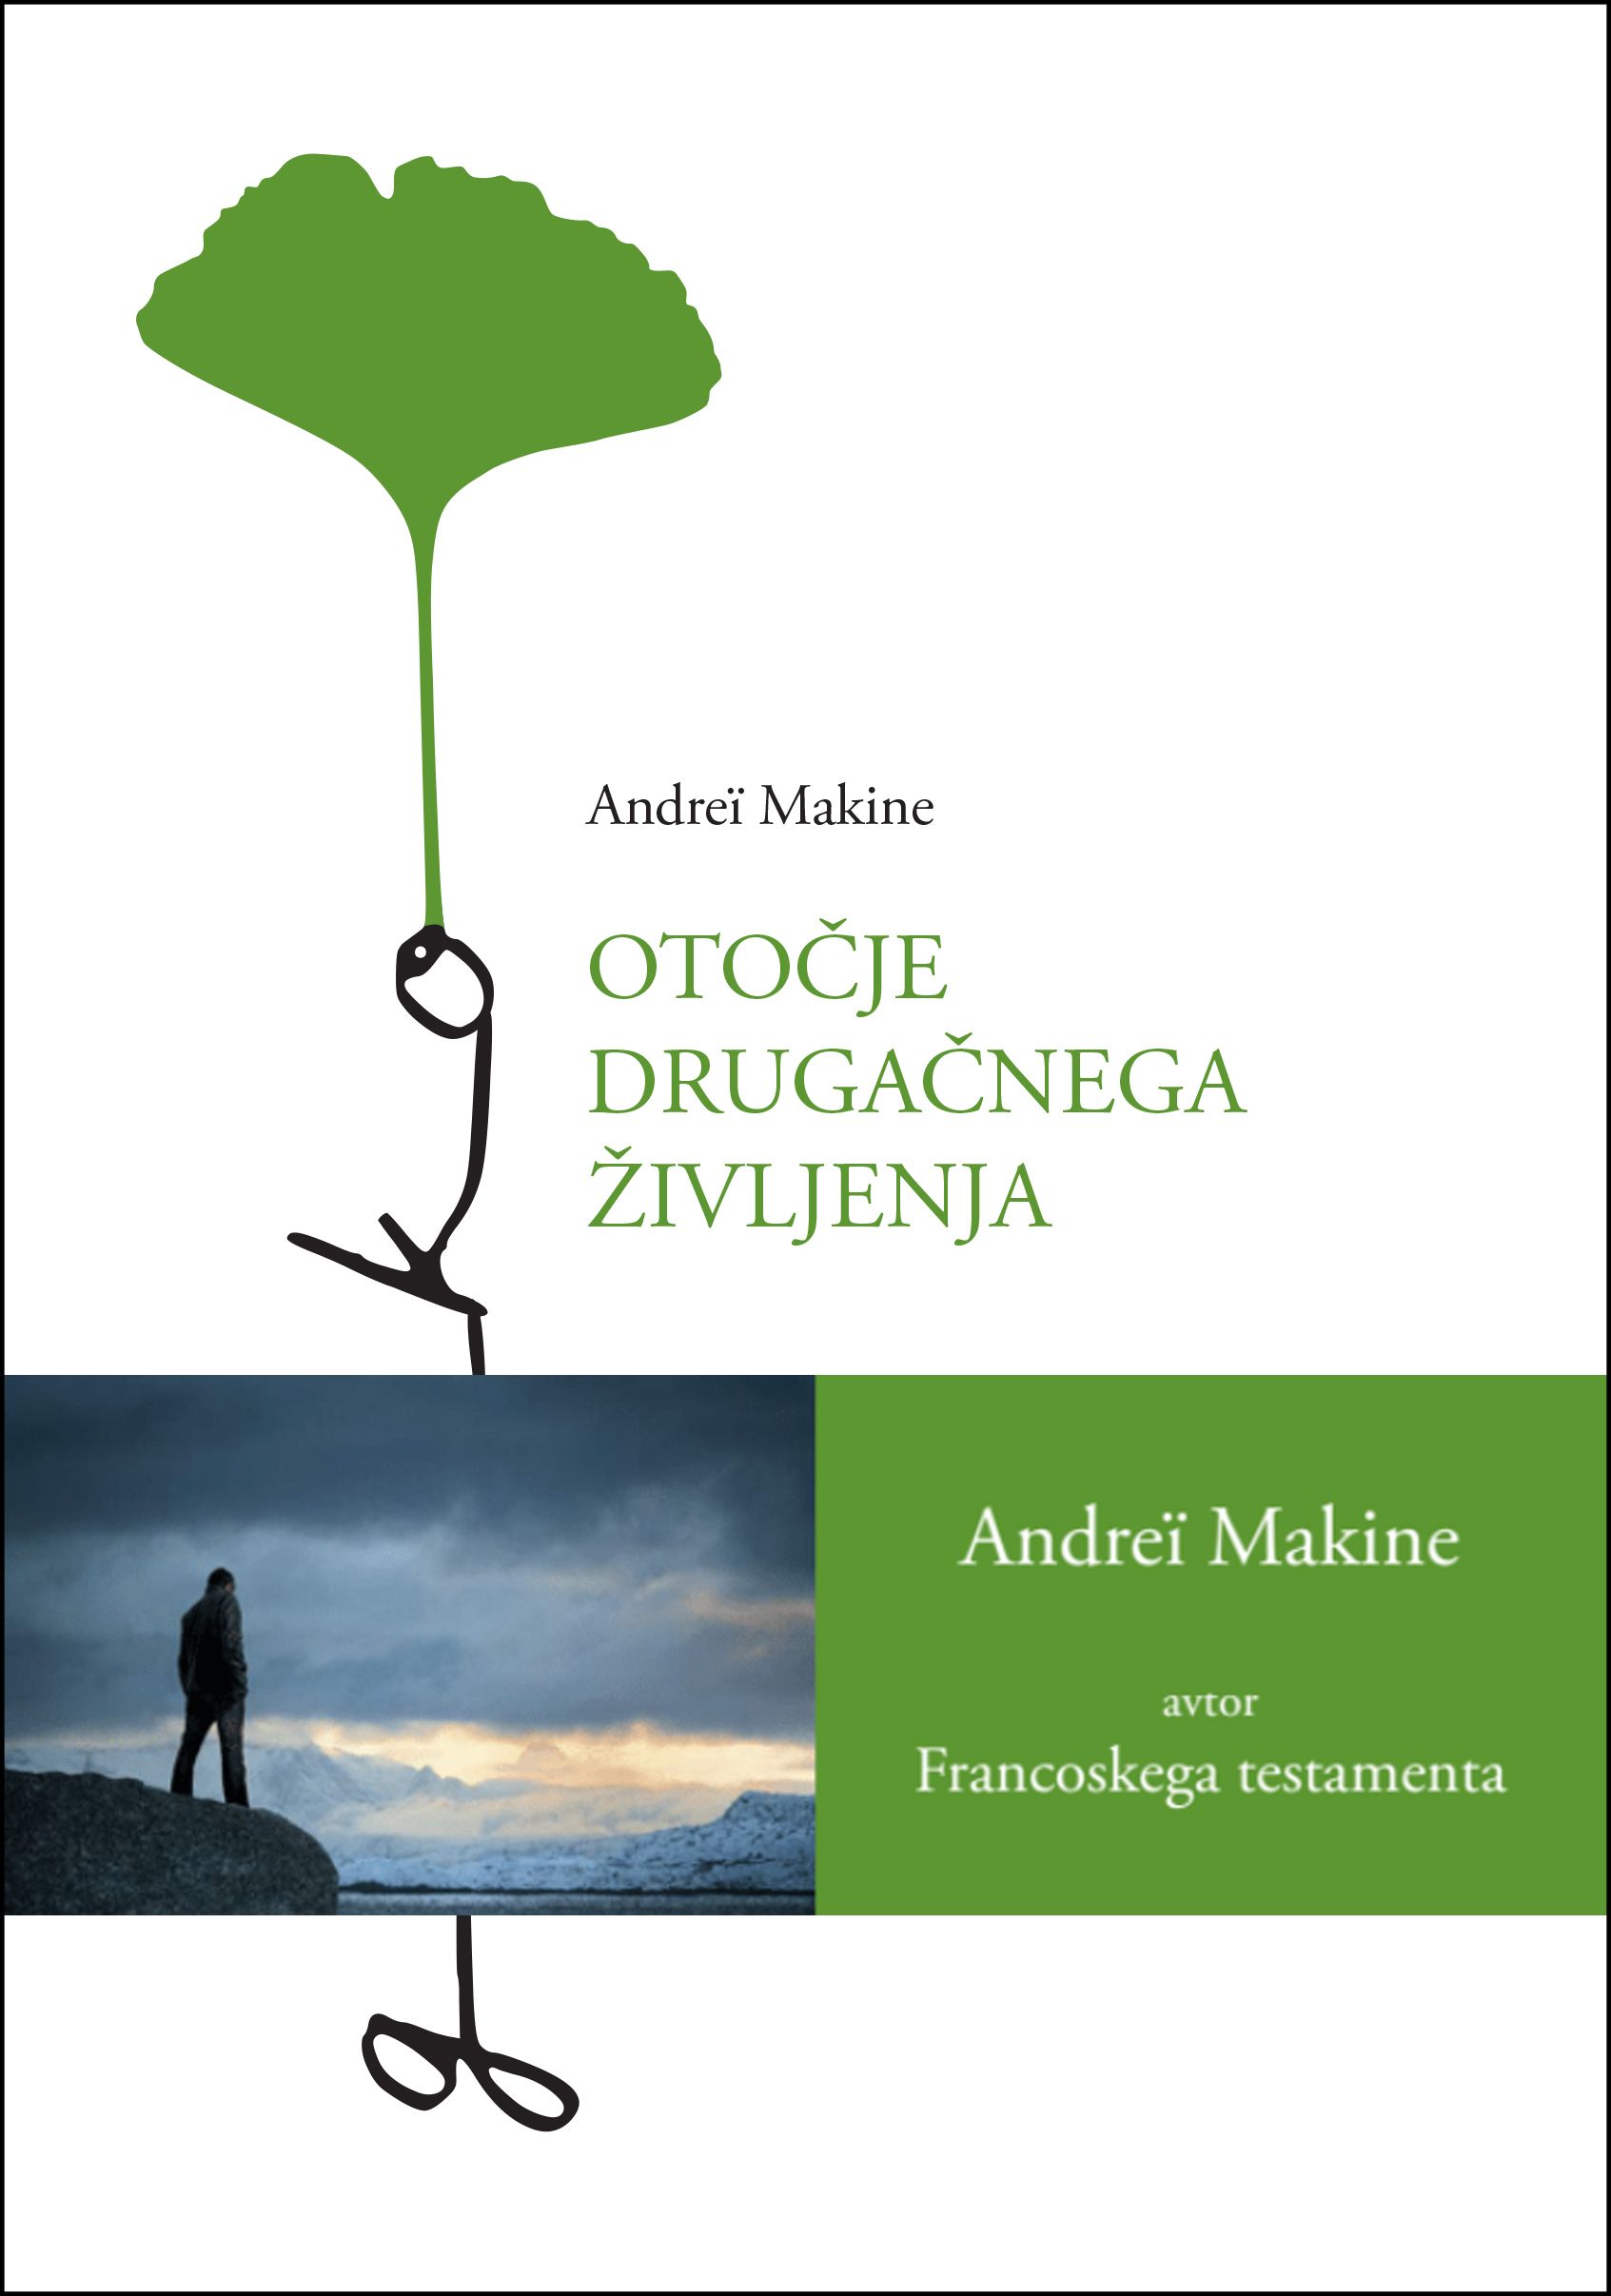 Andreï Makine / Otočje drugačnega življenja